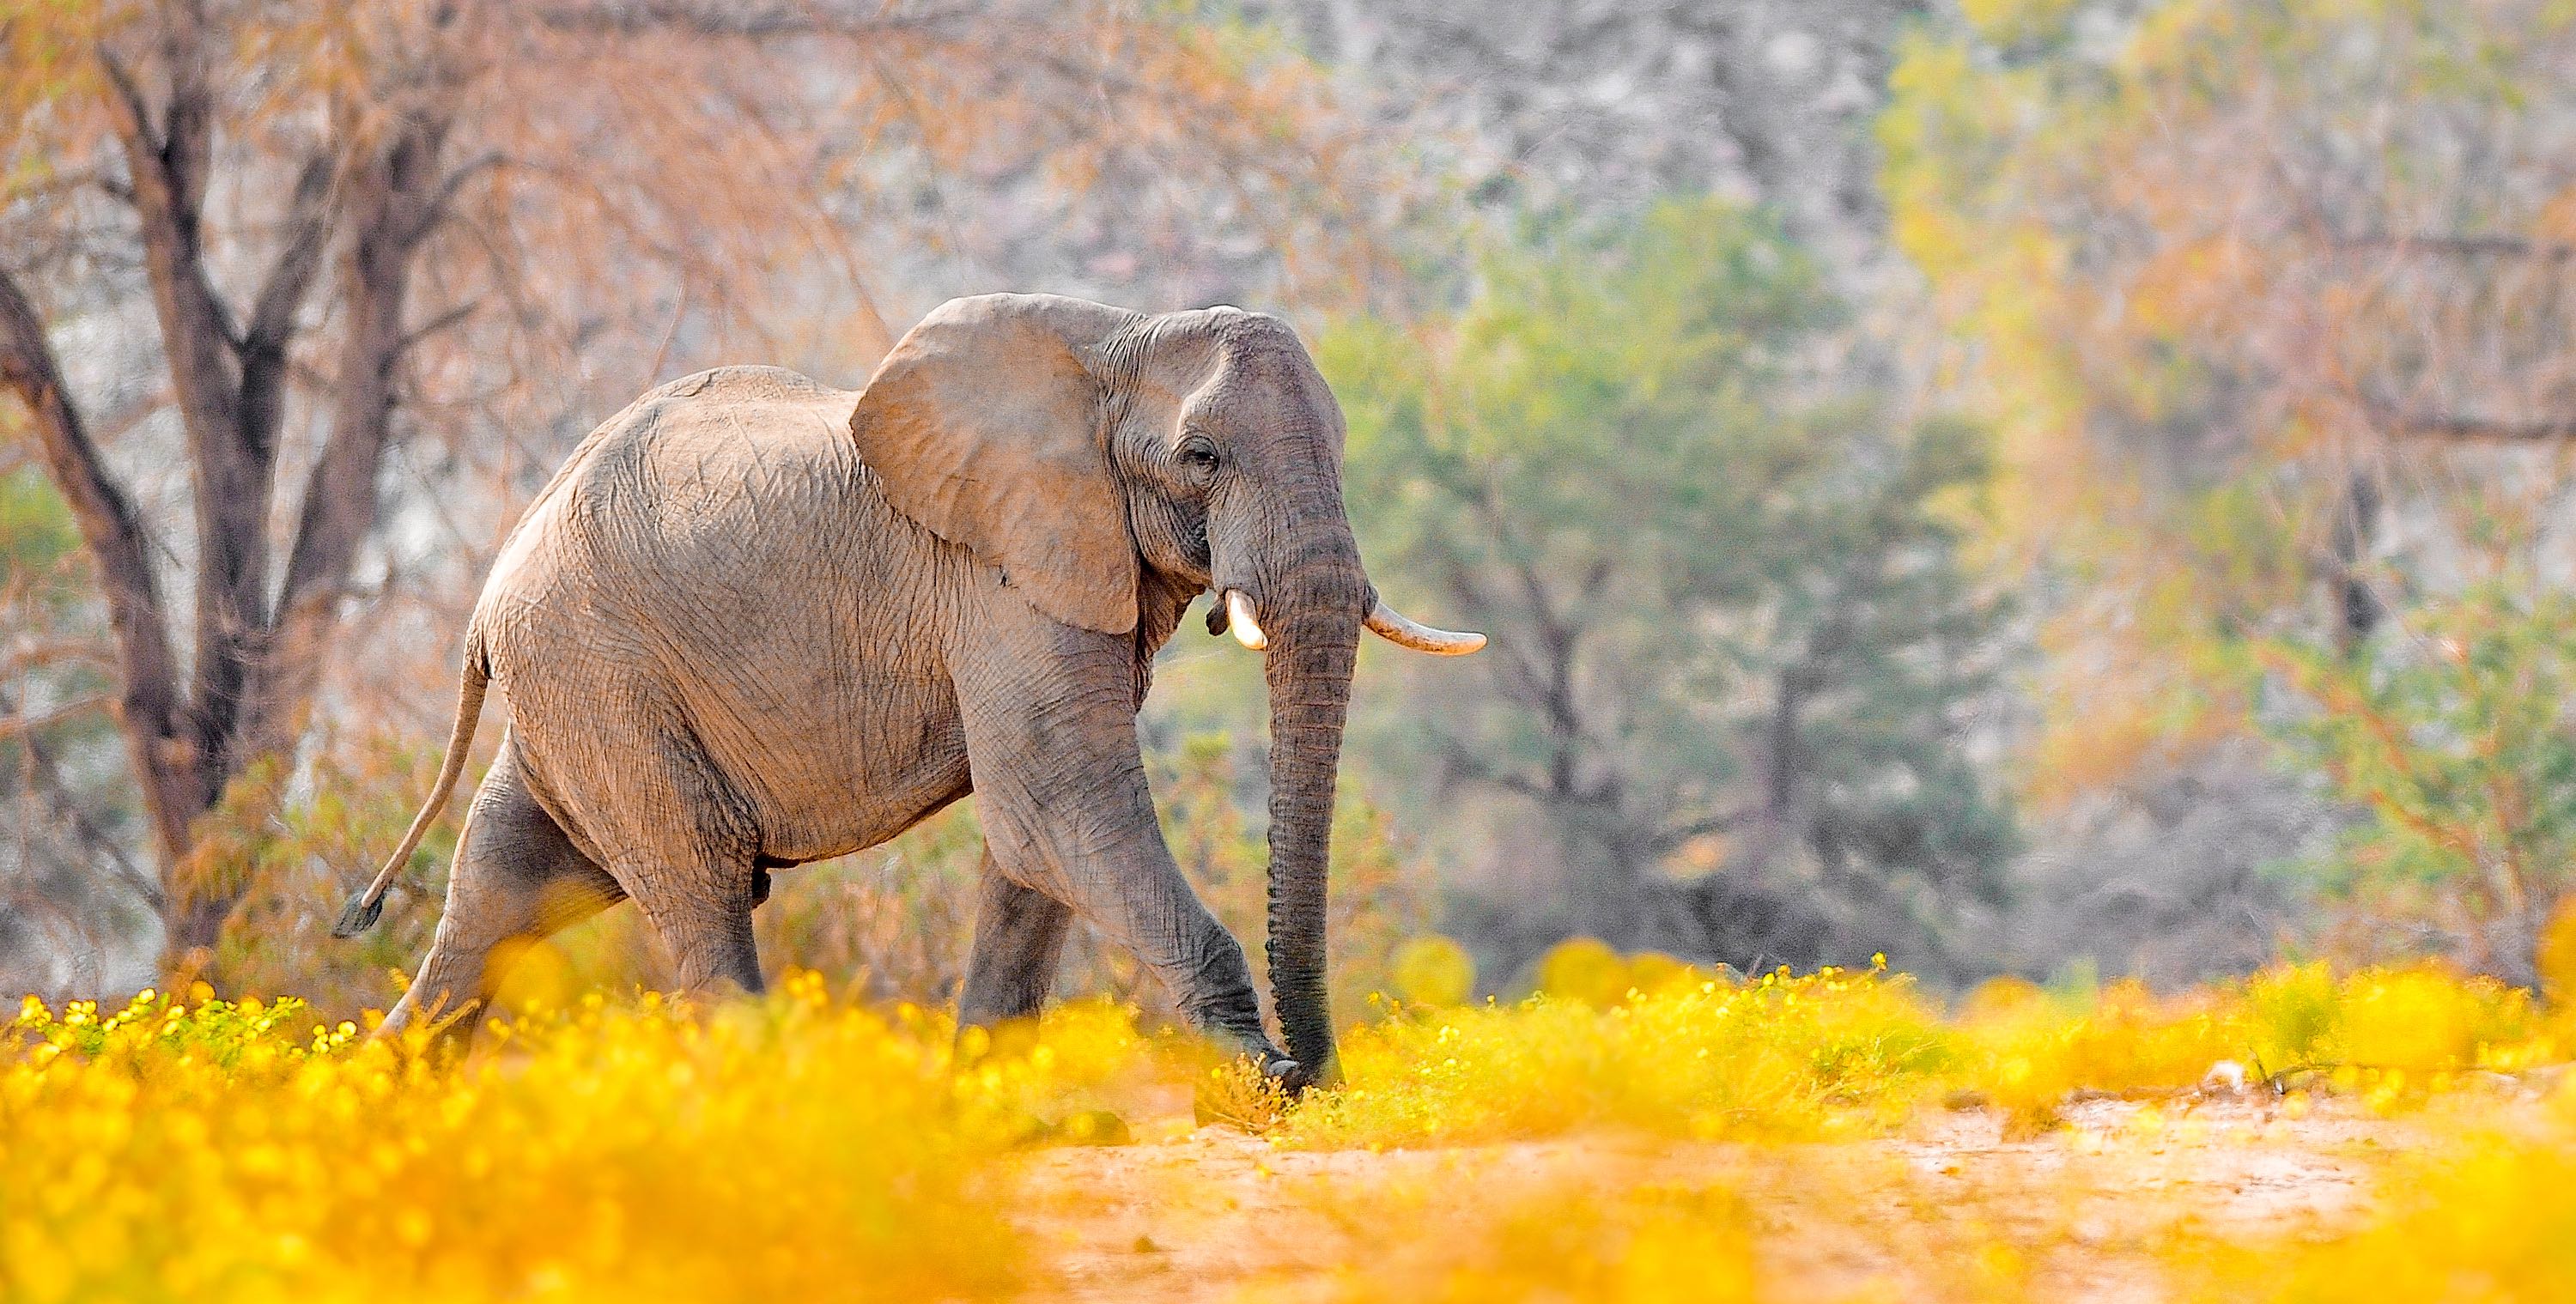 An elephant walks through a golden woodland.